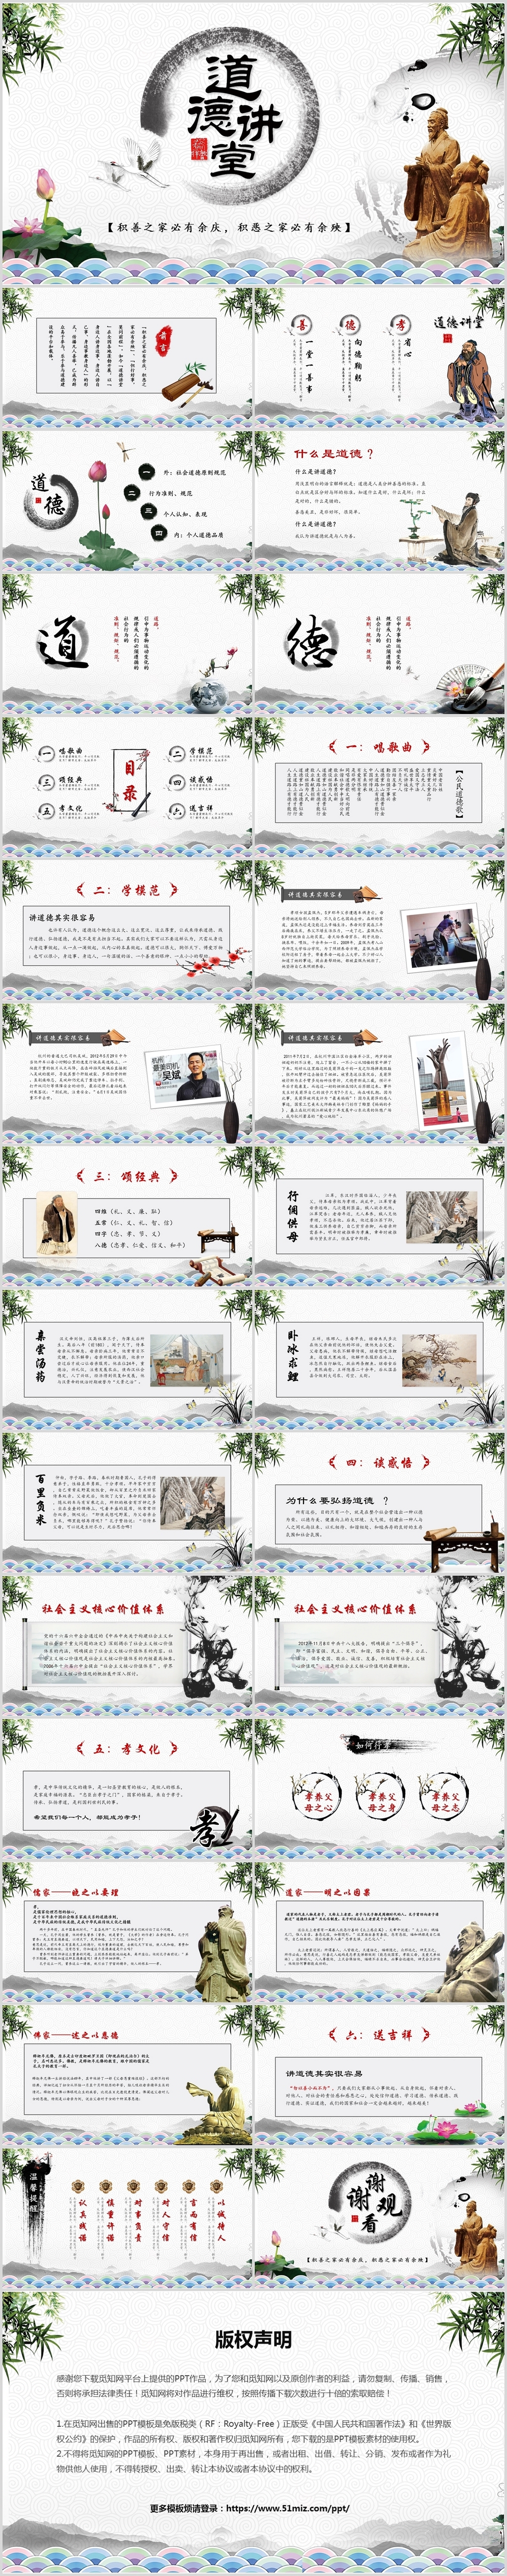 中国风道德讲堂中国古典文化艺术ppt模板